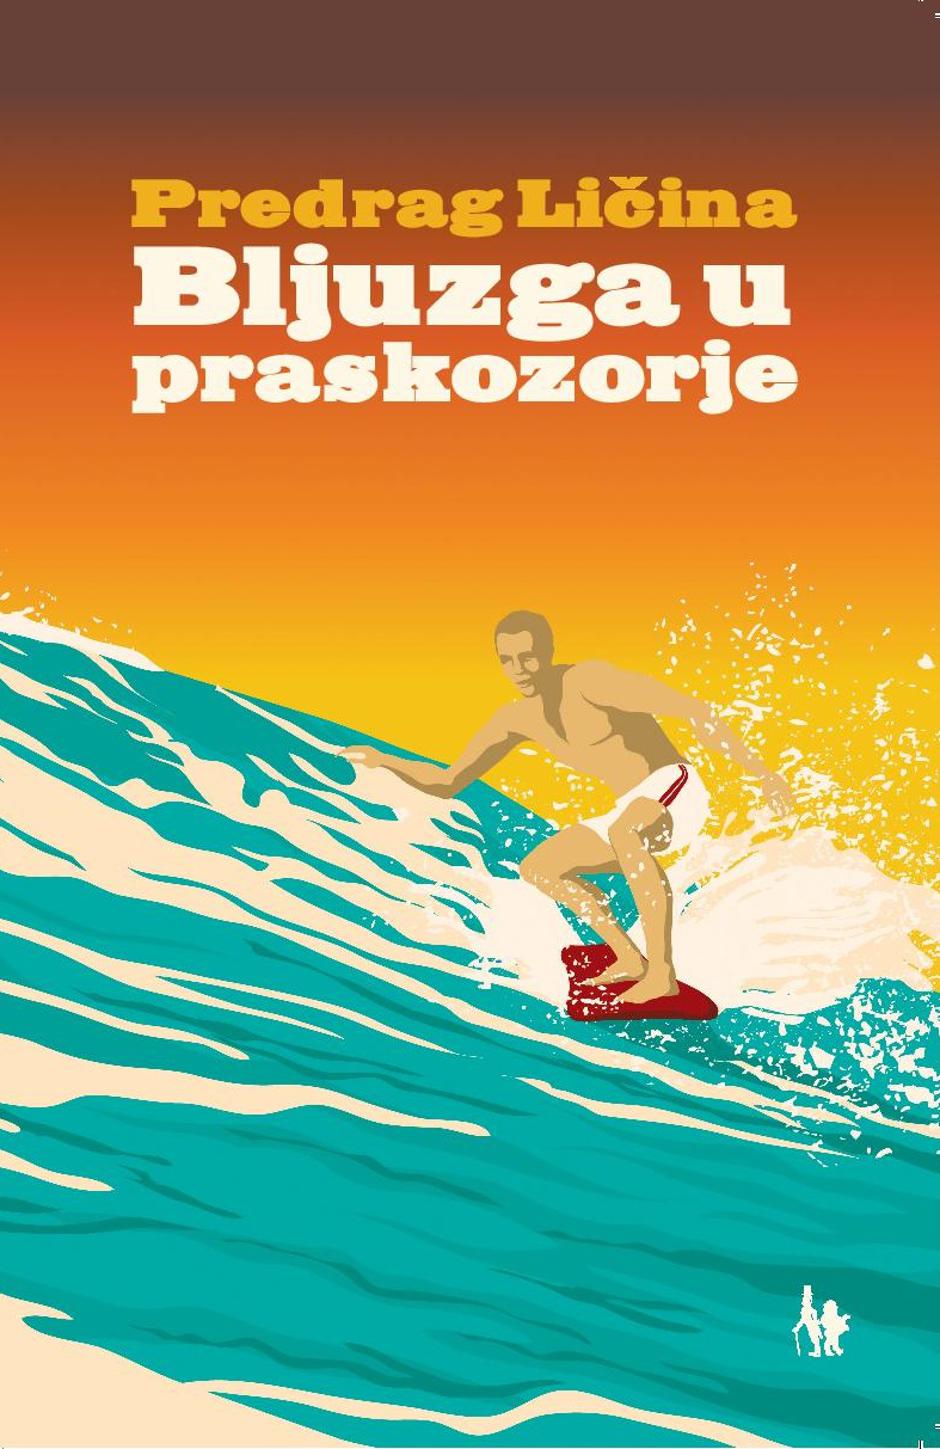 "Bljuzga u praskozorje", Predrag Ličina | Author: Jesenski i Turk